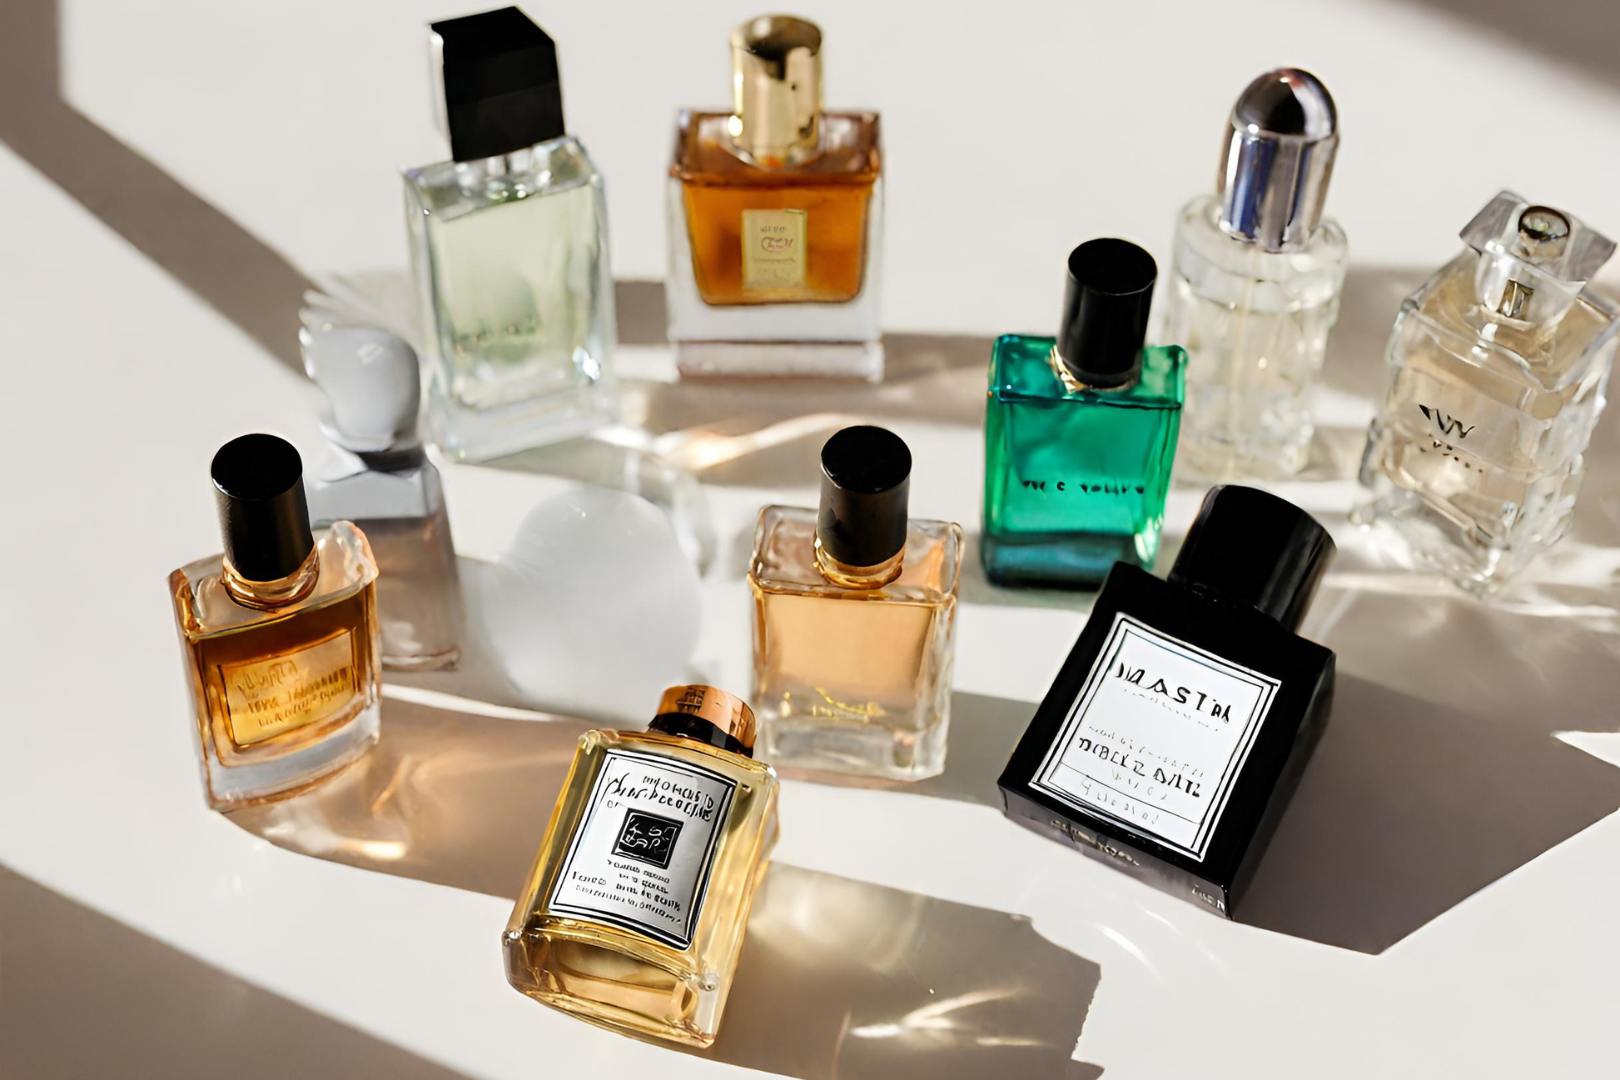 Melhores Perfumes Masculinos para o Dia a Dia:10 Ótimas Opções